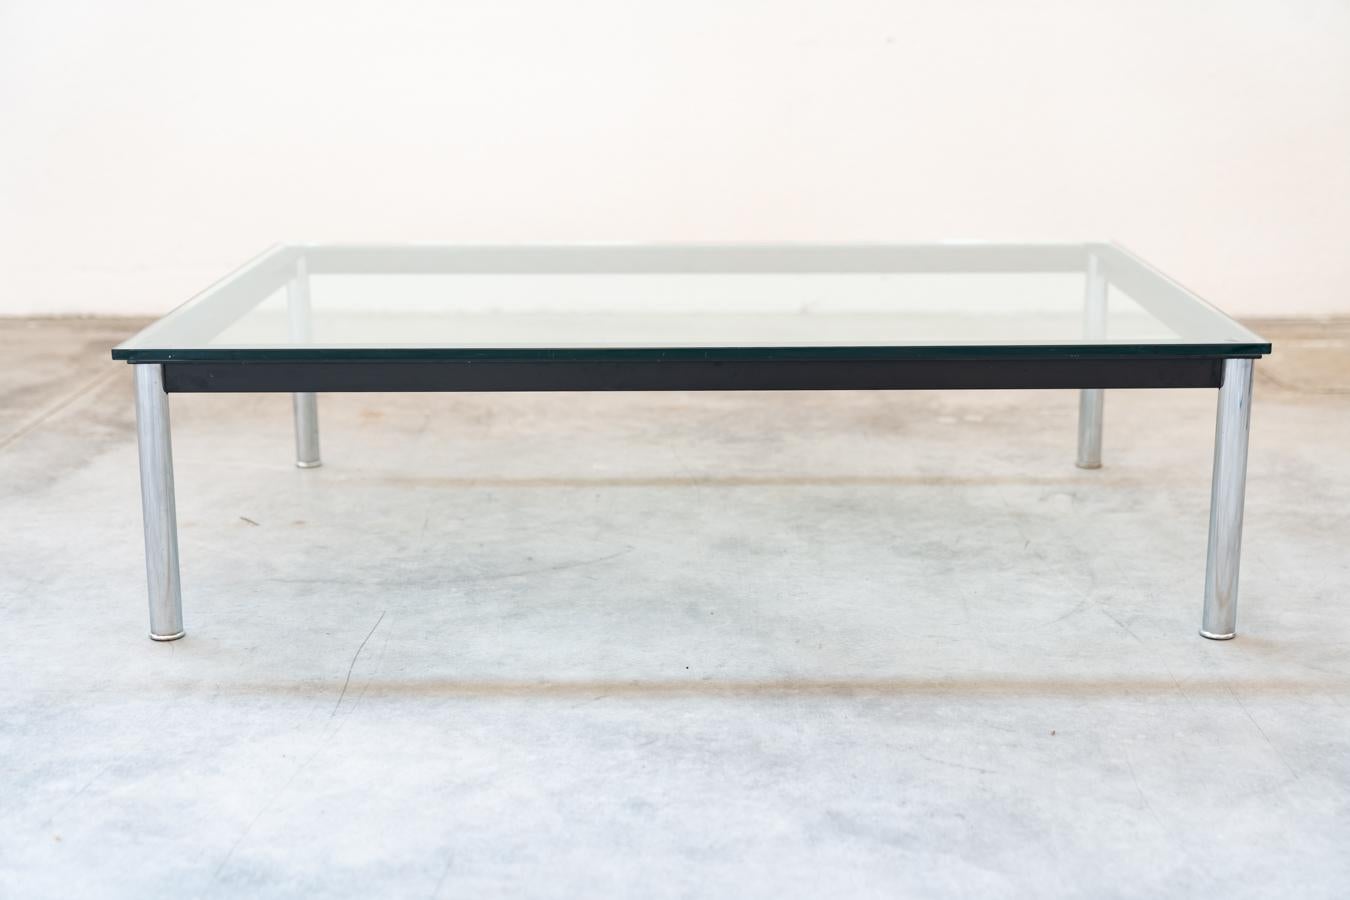 Table basse Cassina LCD 10, par Le Corbusier, 1970/1980
Table basse rectangulaire LC10 conçue par LE CORBUSIER, PIERRE 	JANNERET et CHARLOTTE PERRIAND pour CASSINA en acier chromé et verre 	tempéré. Pieds et cadre en acier chromé trivalent (CR3)